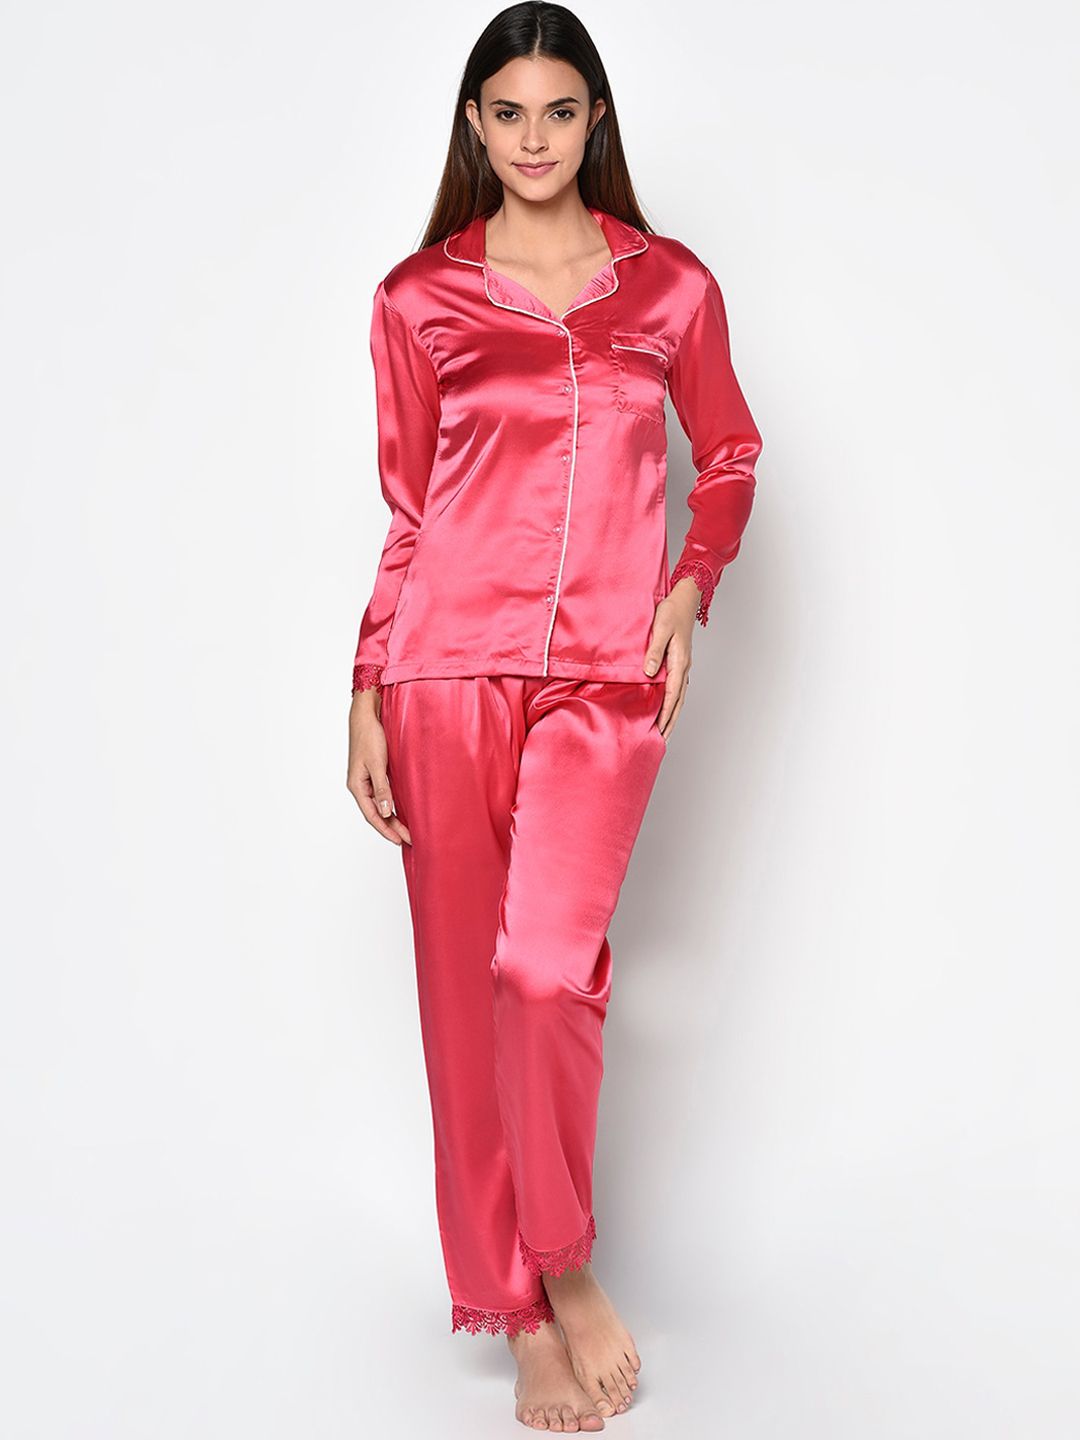 CUSHYBEE Women Fuchsia Satin Night Suit Price in India